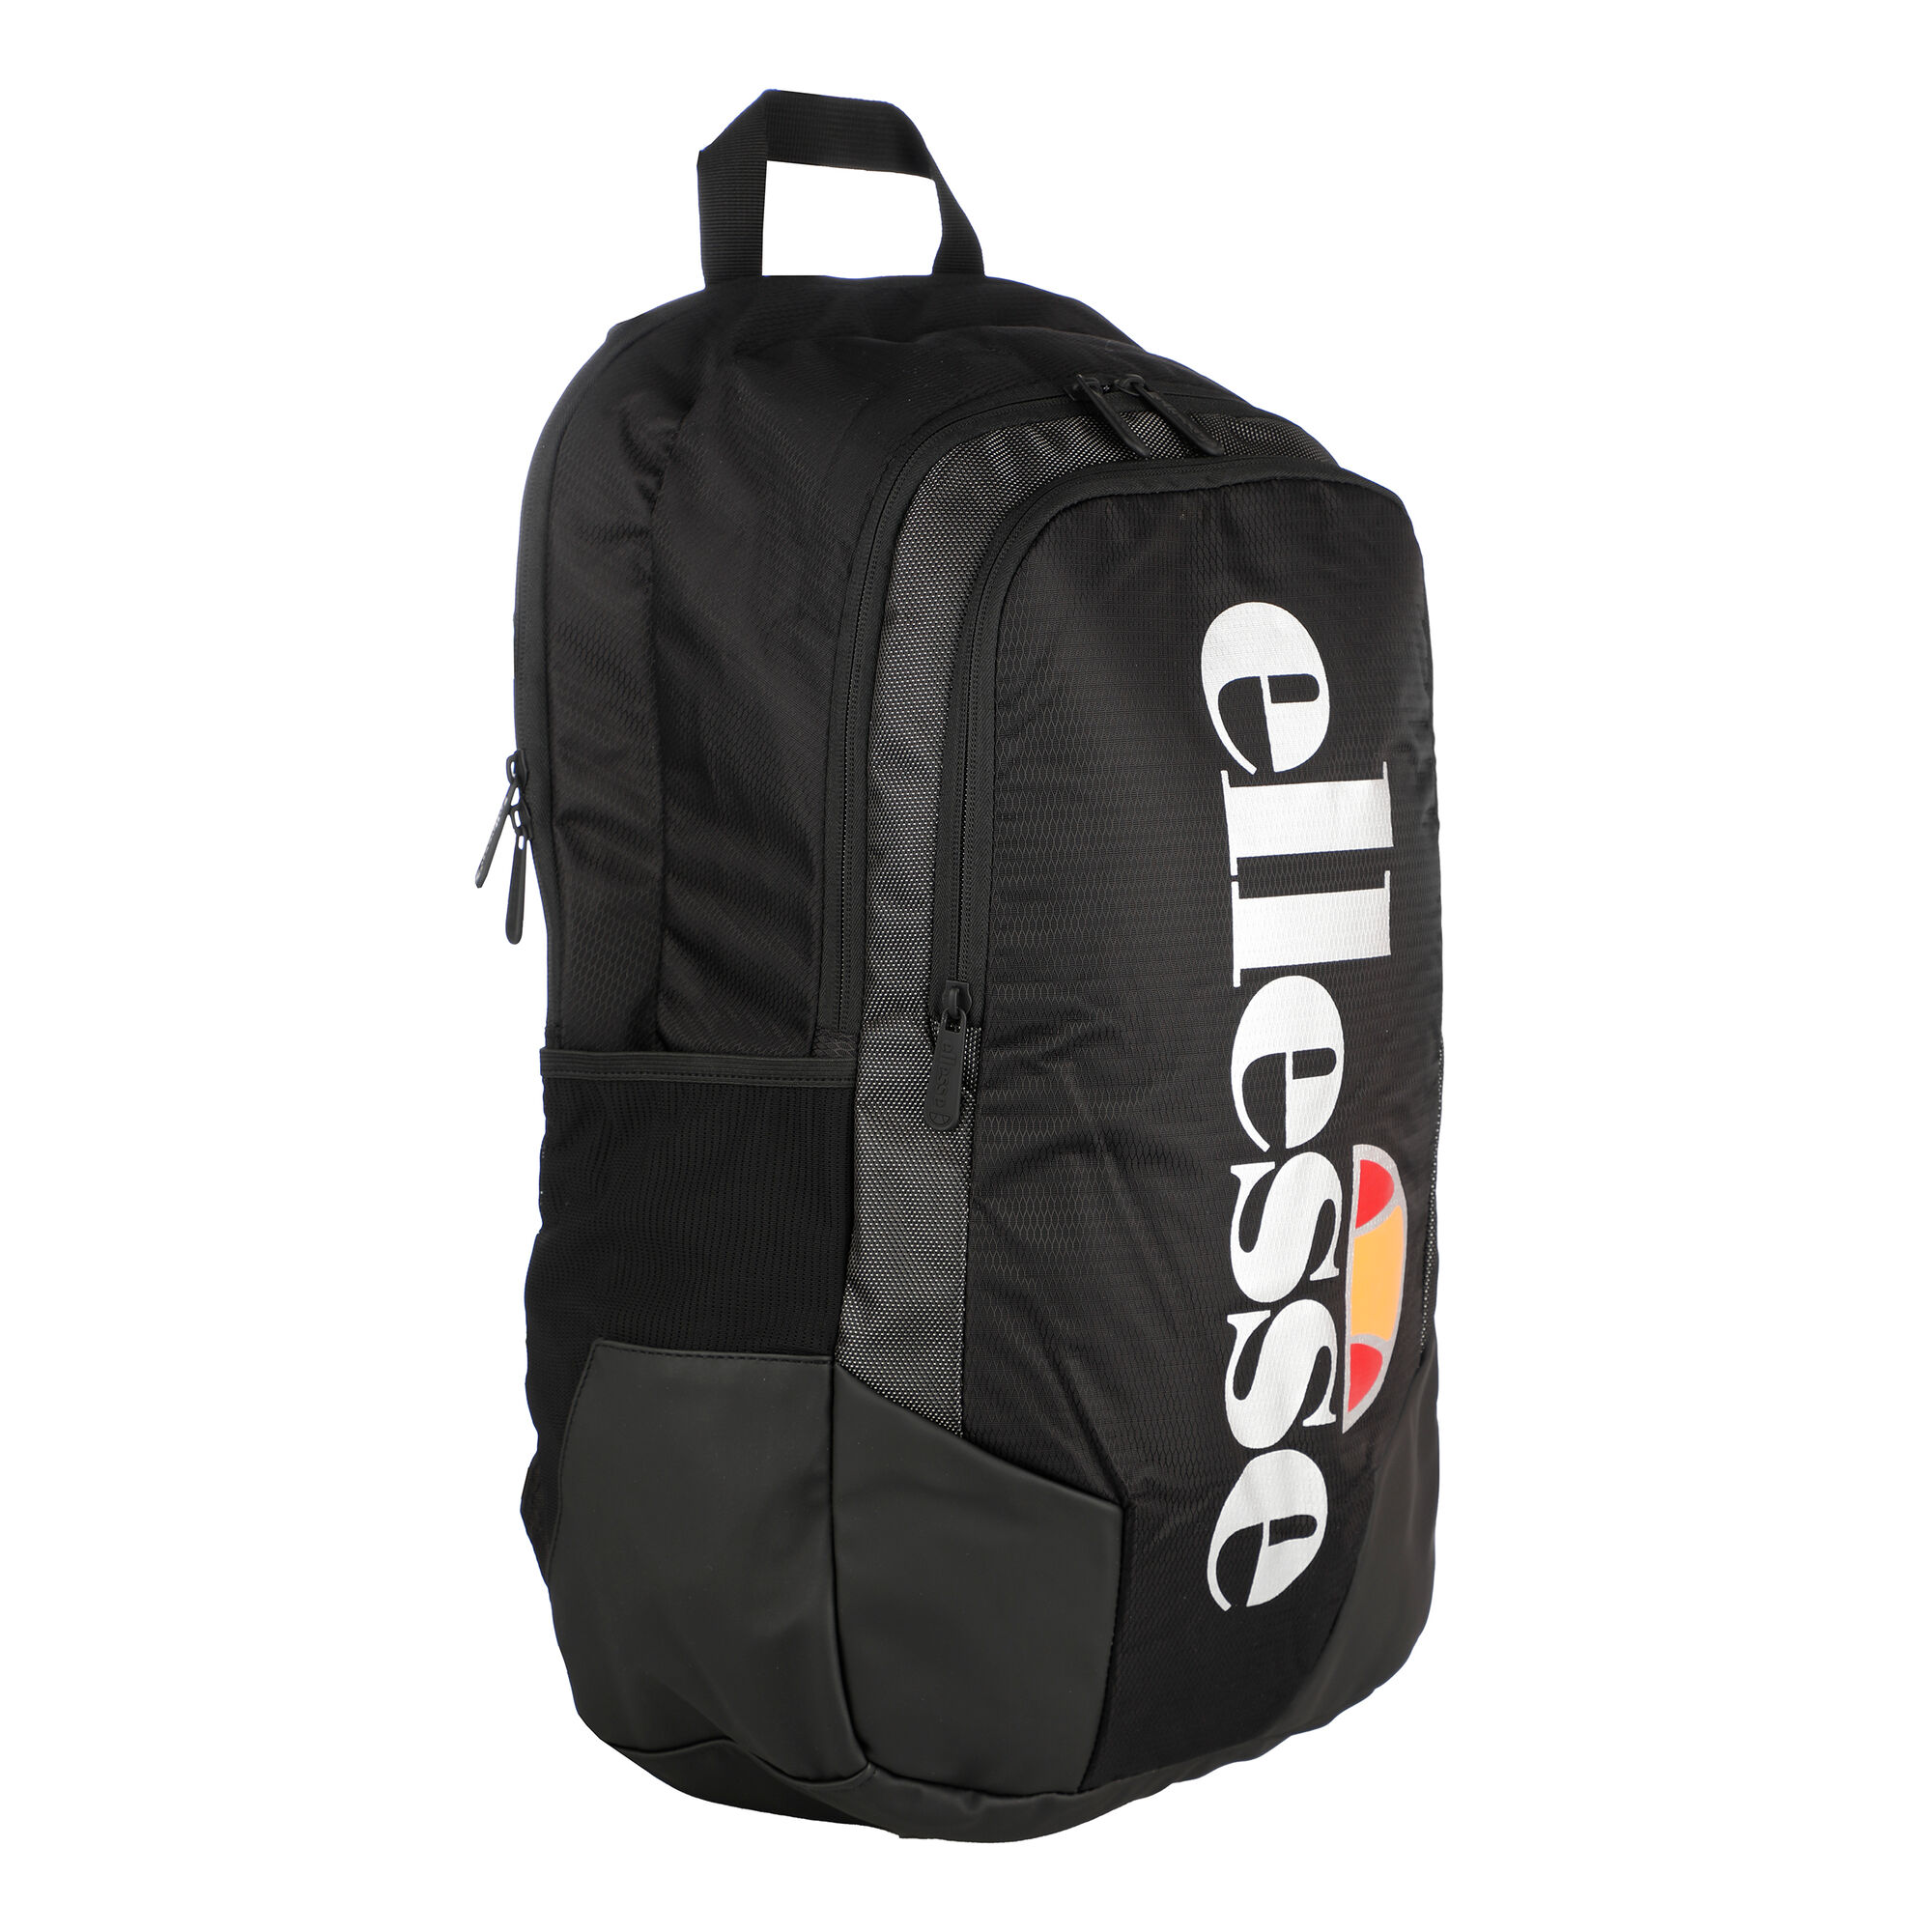 rechtop Raffinaderij Geneigd zijn buy Ellesse Kanguro Backpack - Black, Multicoloured online | Tennis-Point